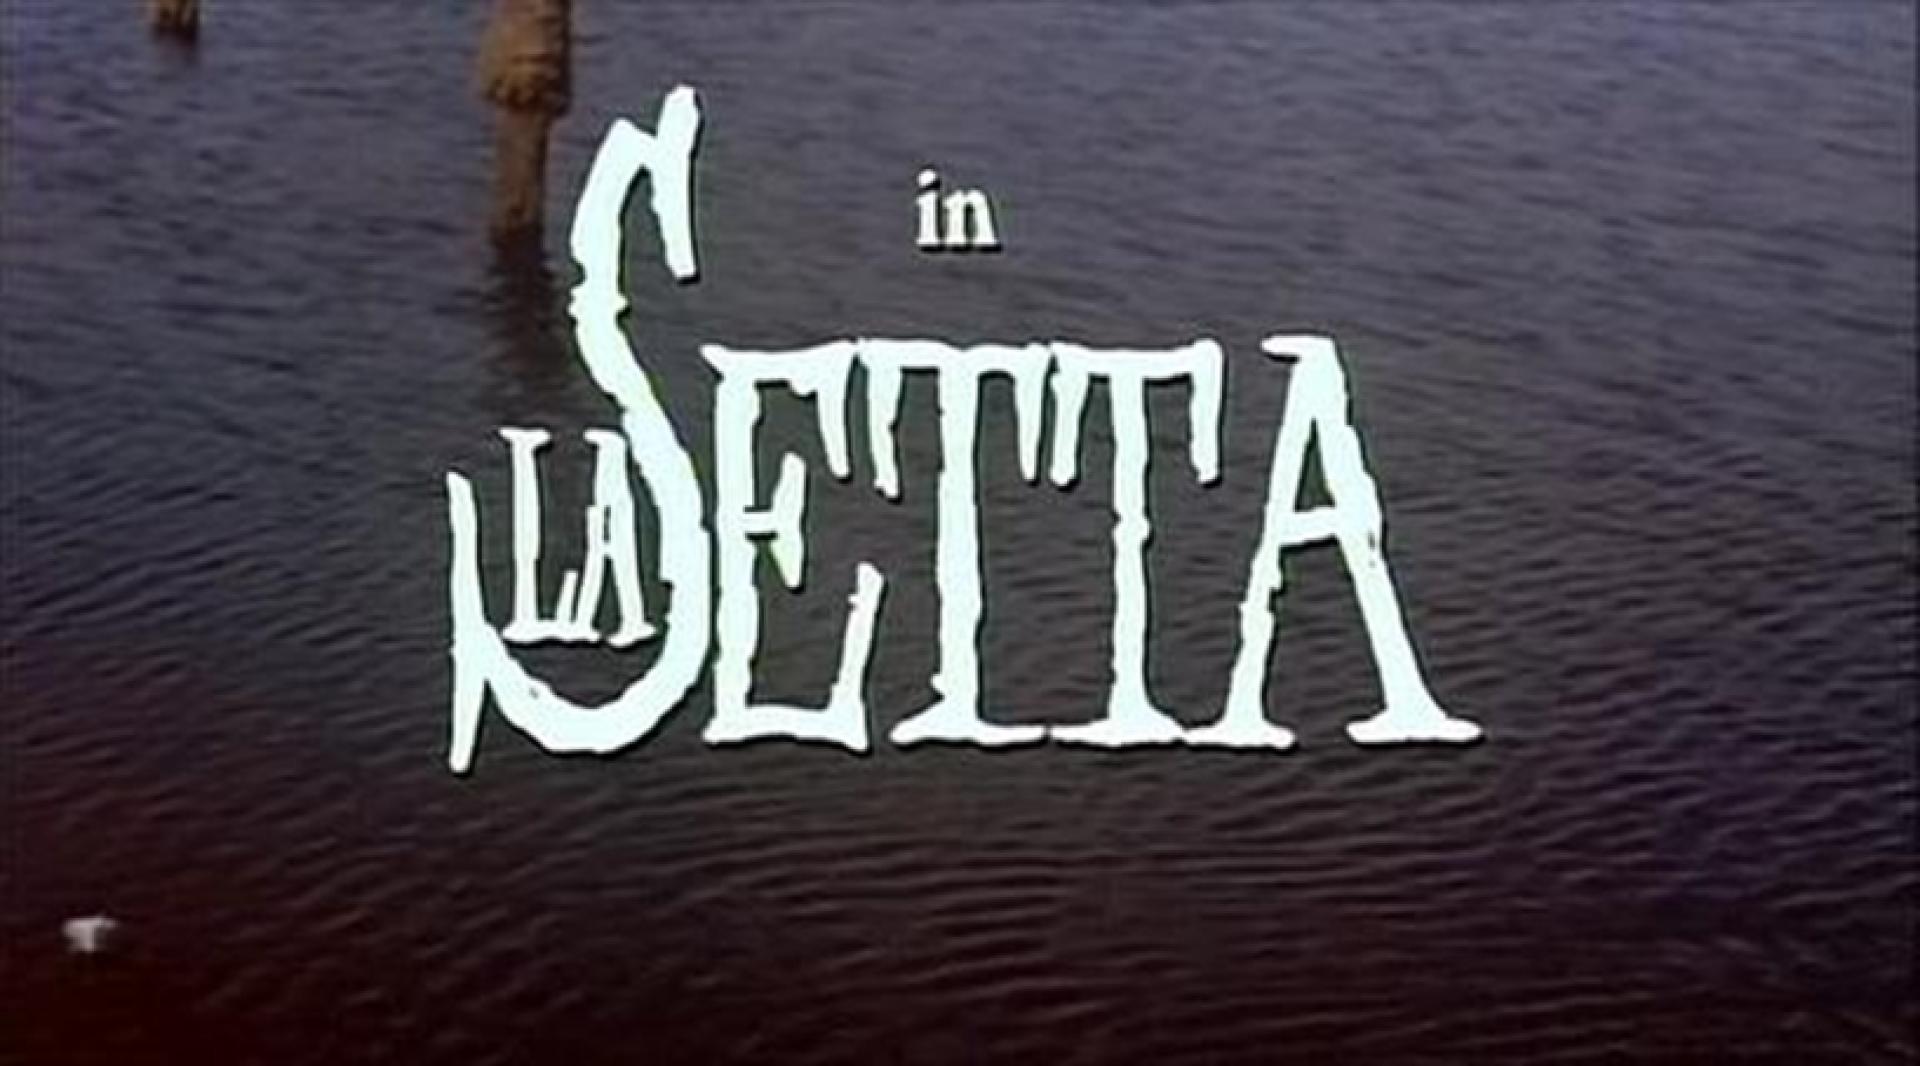 La setta / The Sect (1991)